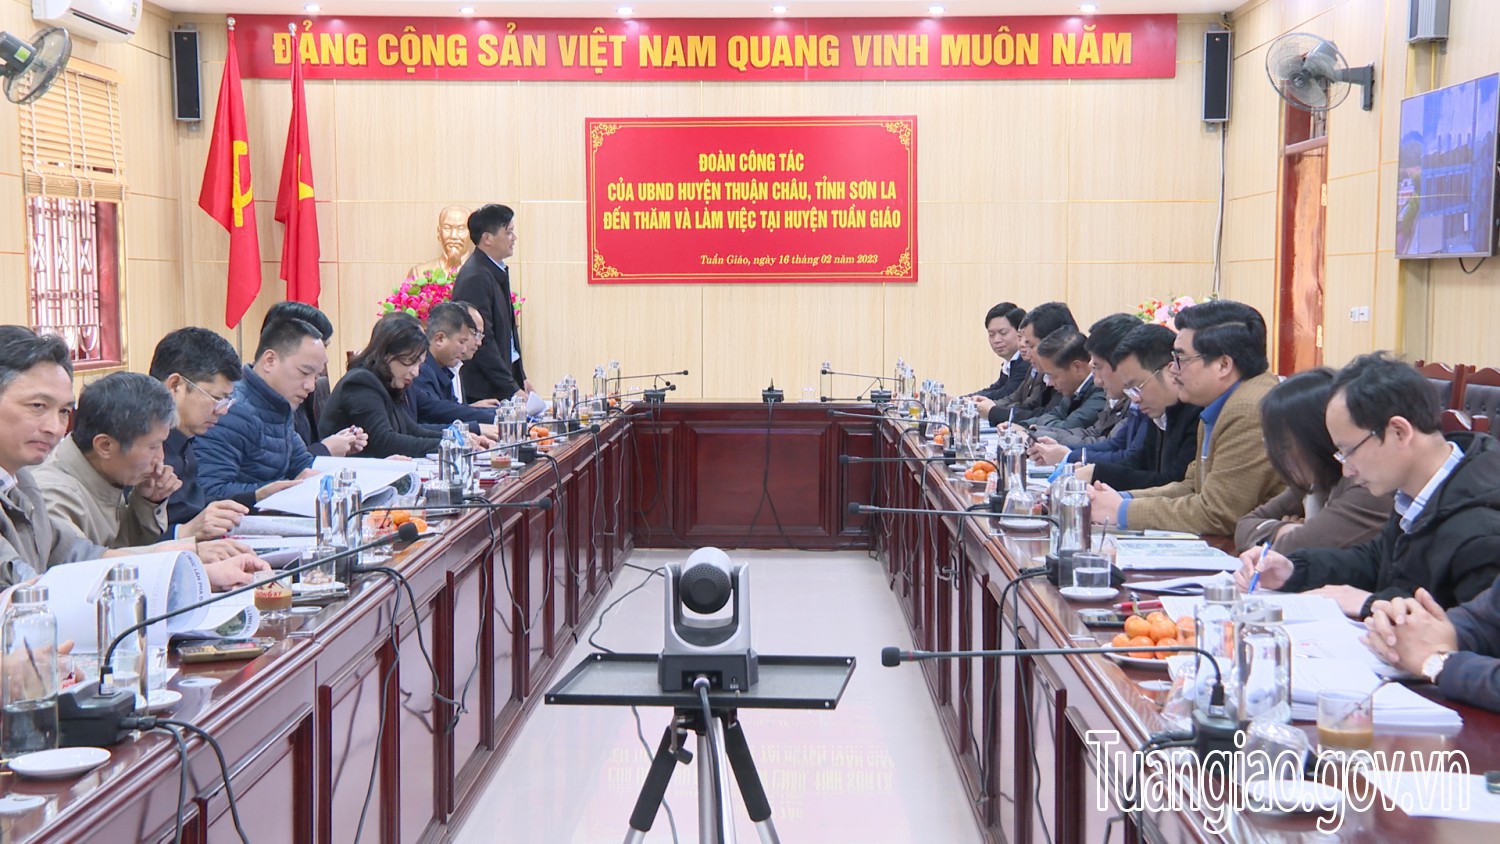 Đoàn công tác của UBND huyện Thuận Châu Tỉnh Sơn La đến thăm và làm việc tại huyện Tuần Giáo